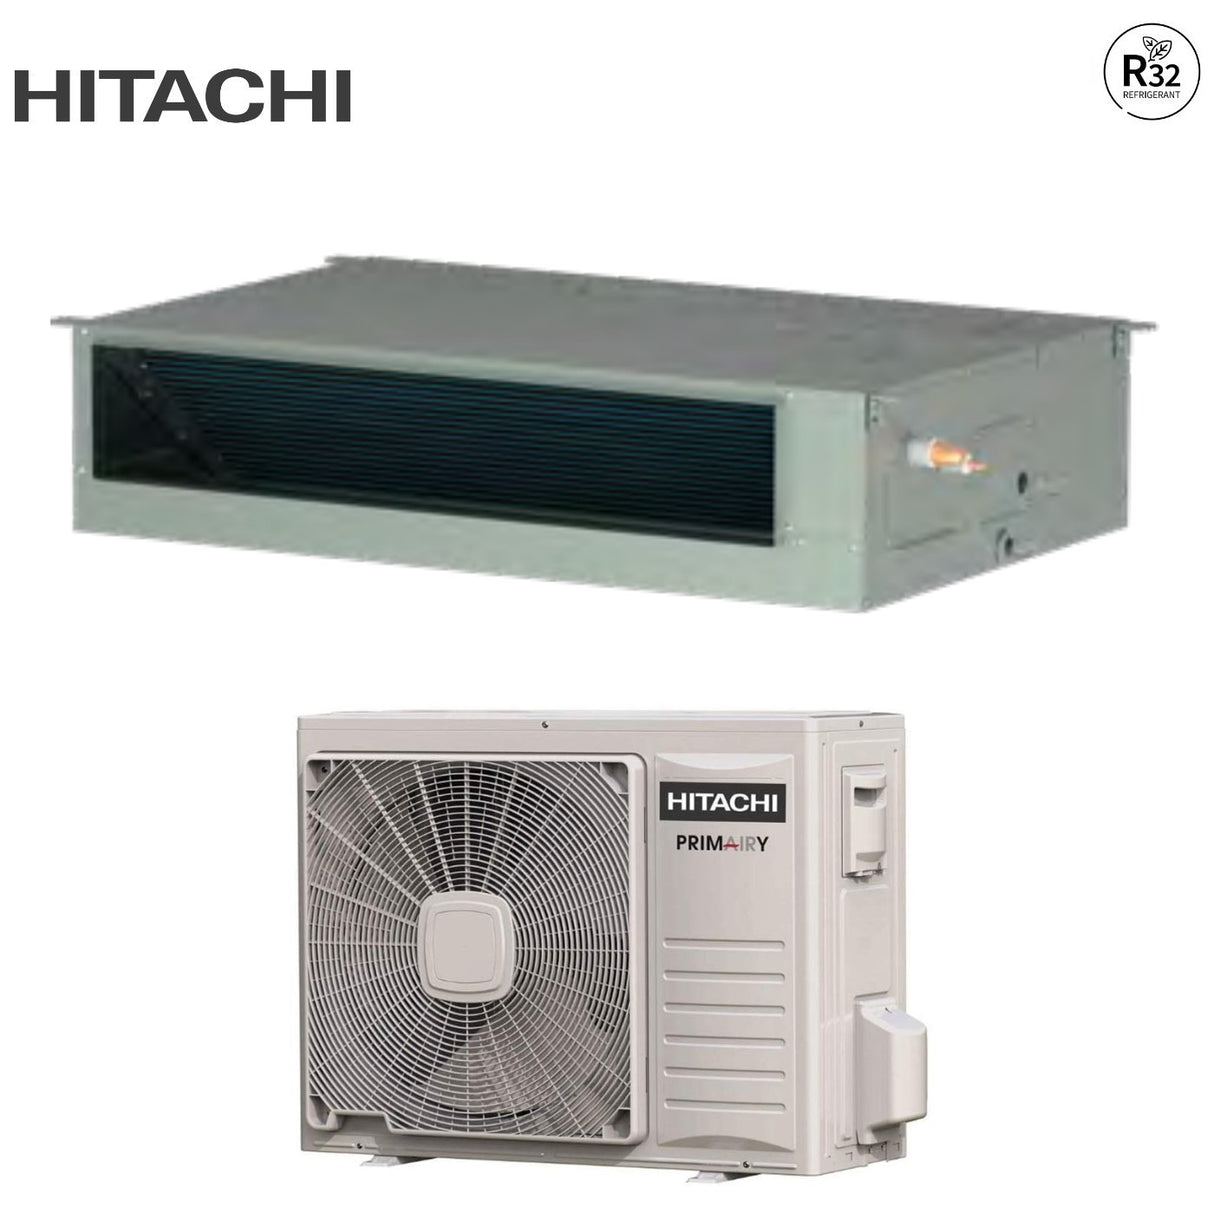 immagine-2-hitachi-climatizzatore-condizionatore-hitachi-canalizzato-canalizzabile-inverter-serie-primary-36000-btu-rpil-4-0ufe1nh-ras-4-0ufesnh1-r-32-classe-aa